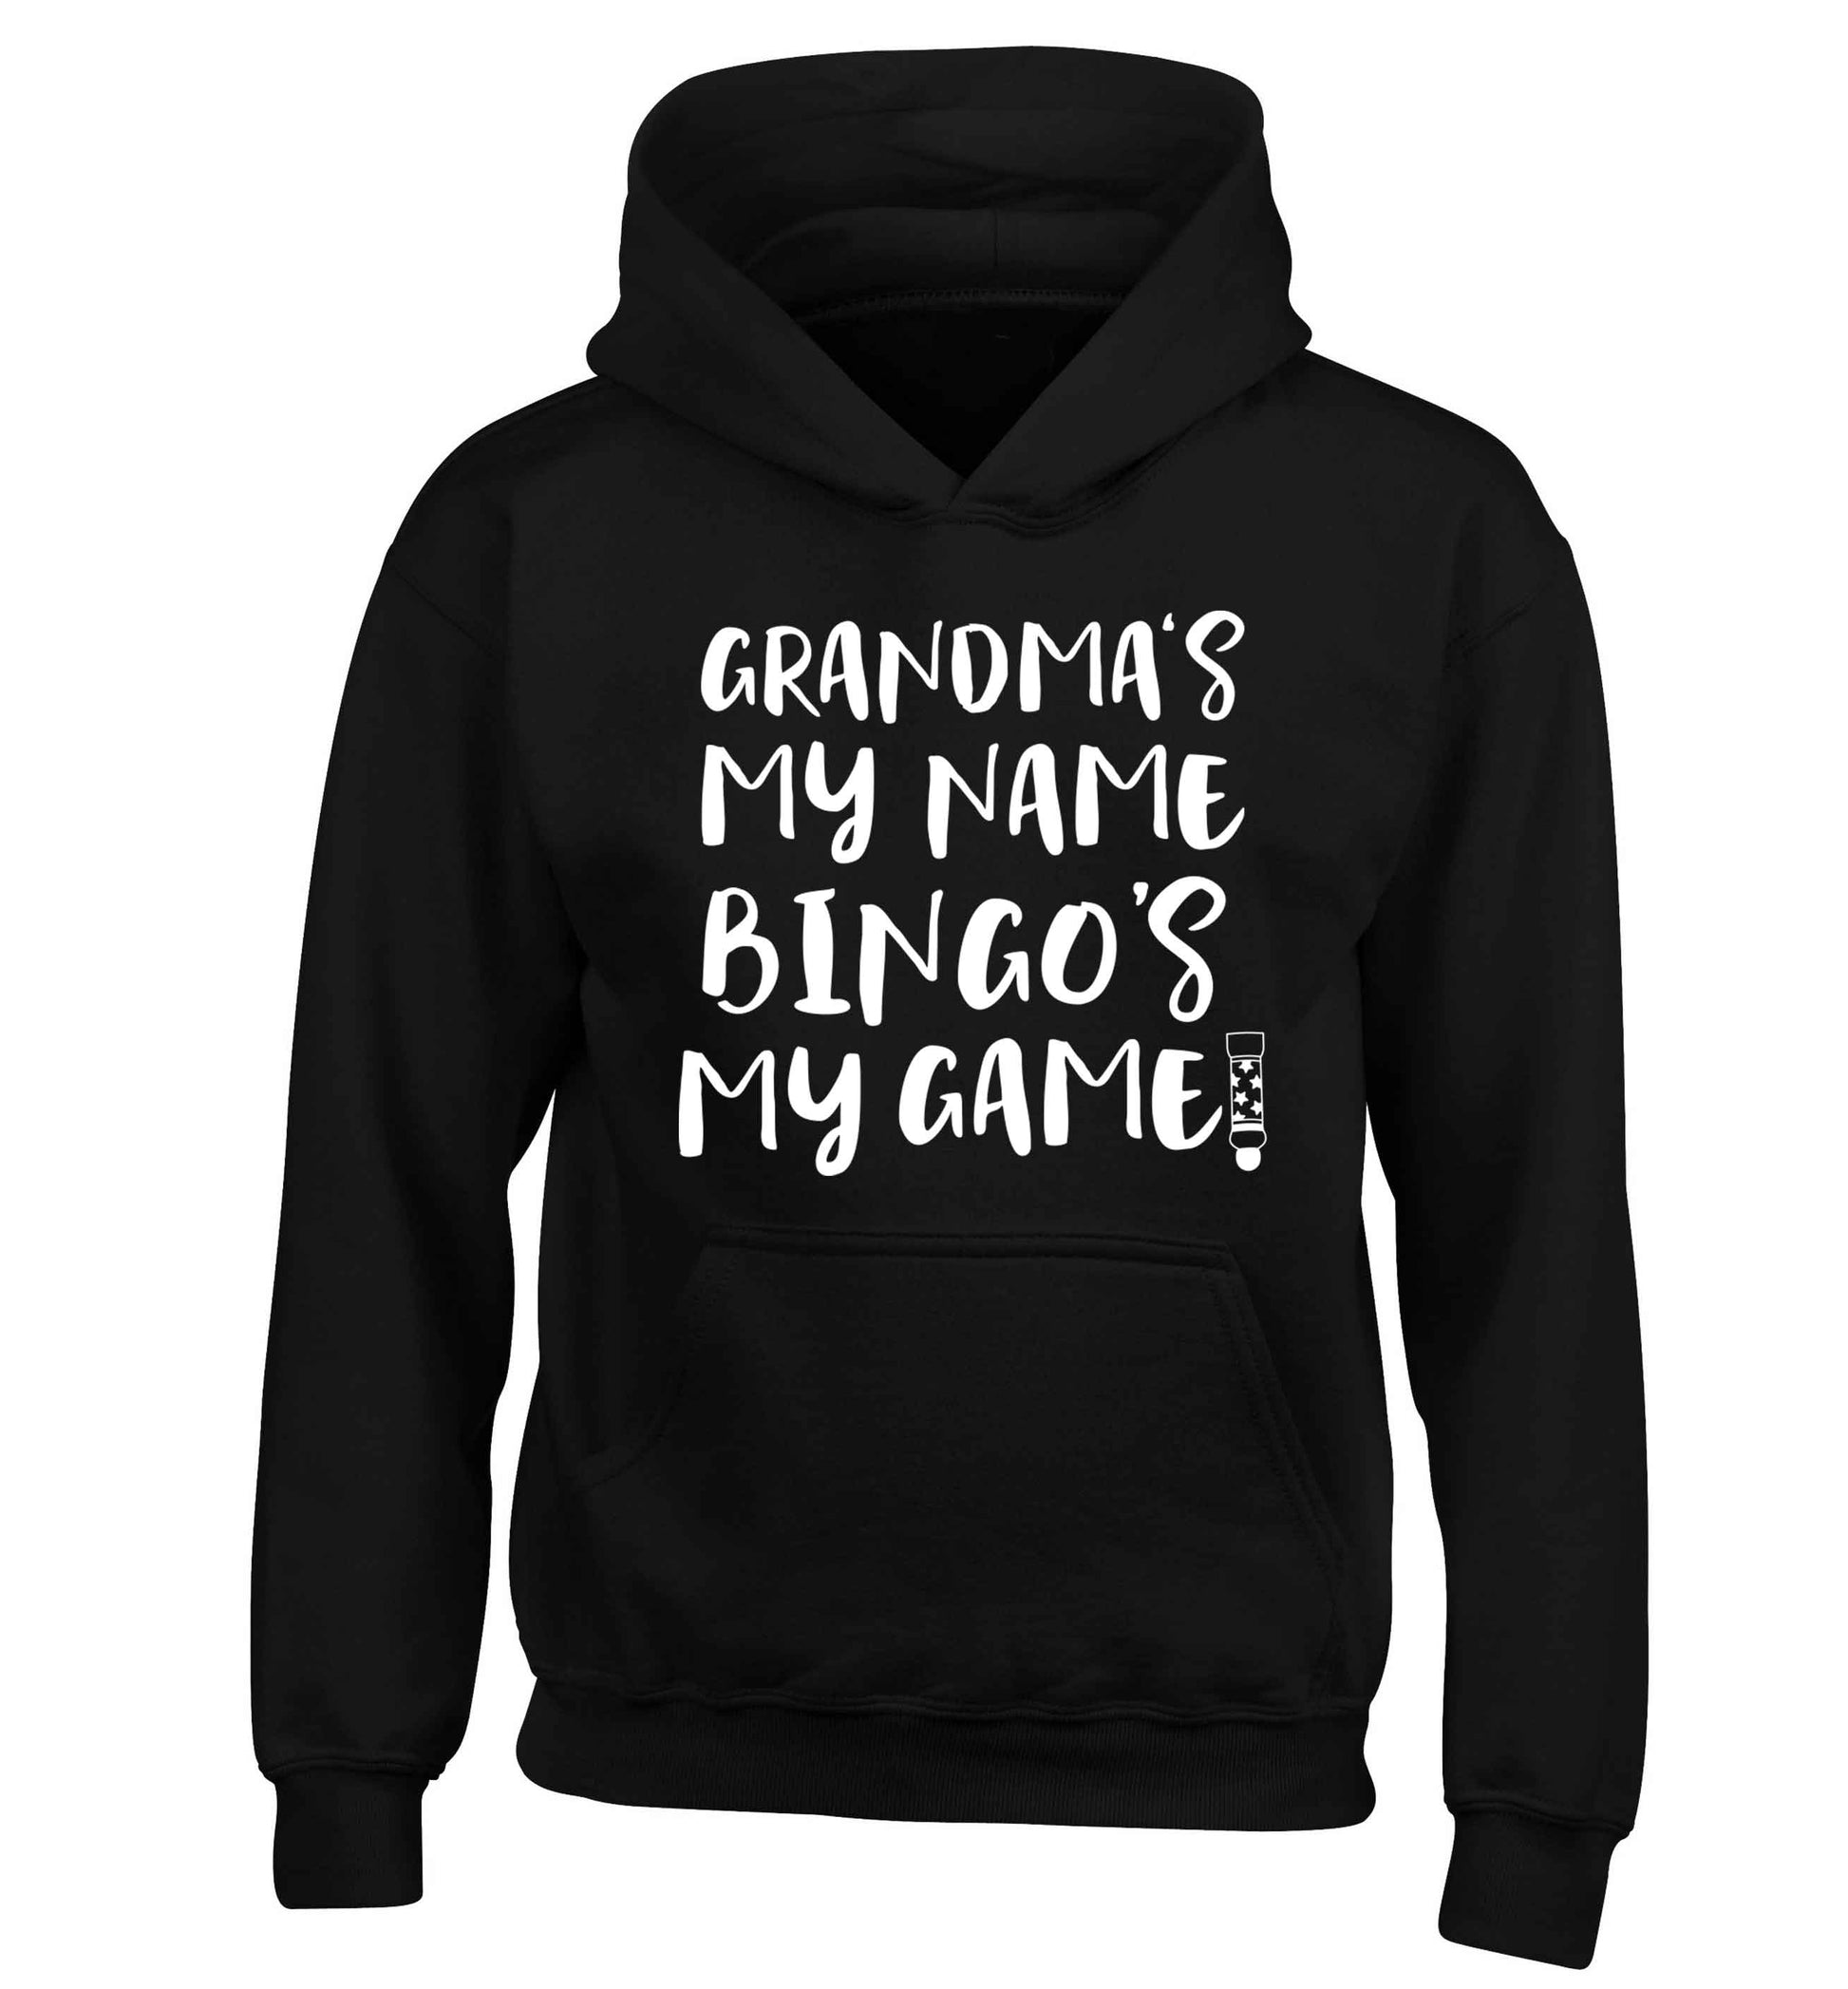 Grandma's my name bingo's my game! children's black hoodie 12-13 Years